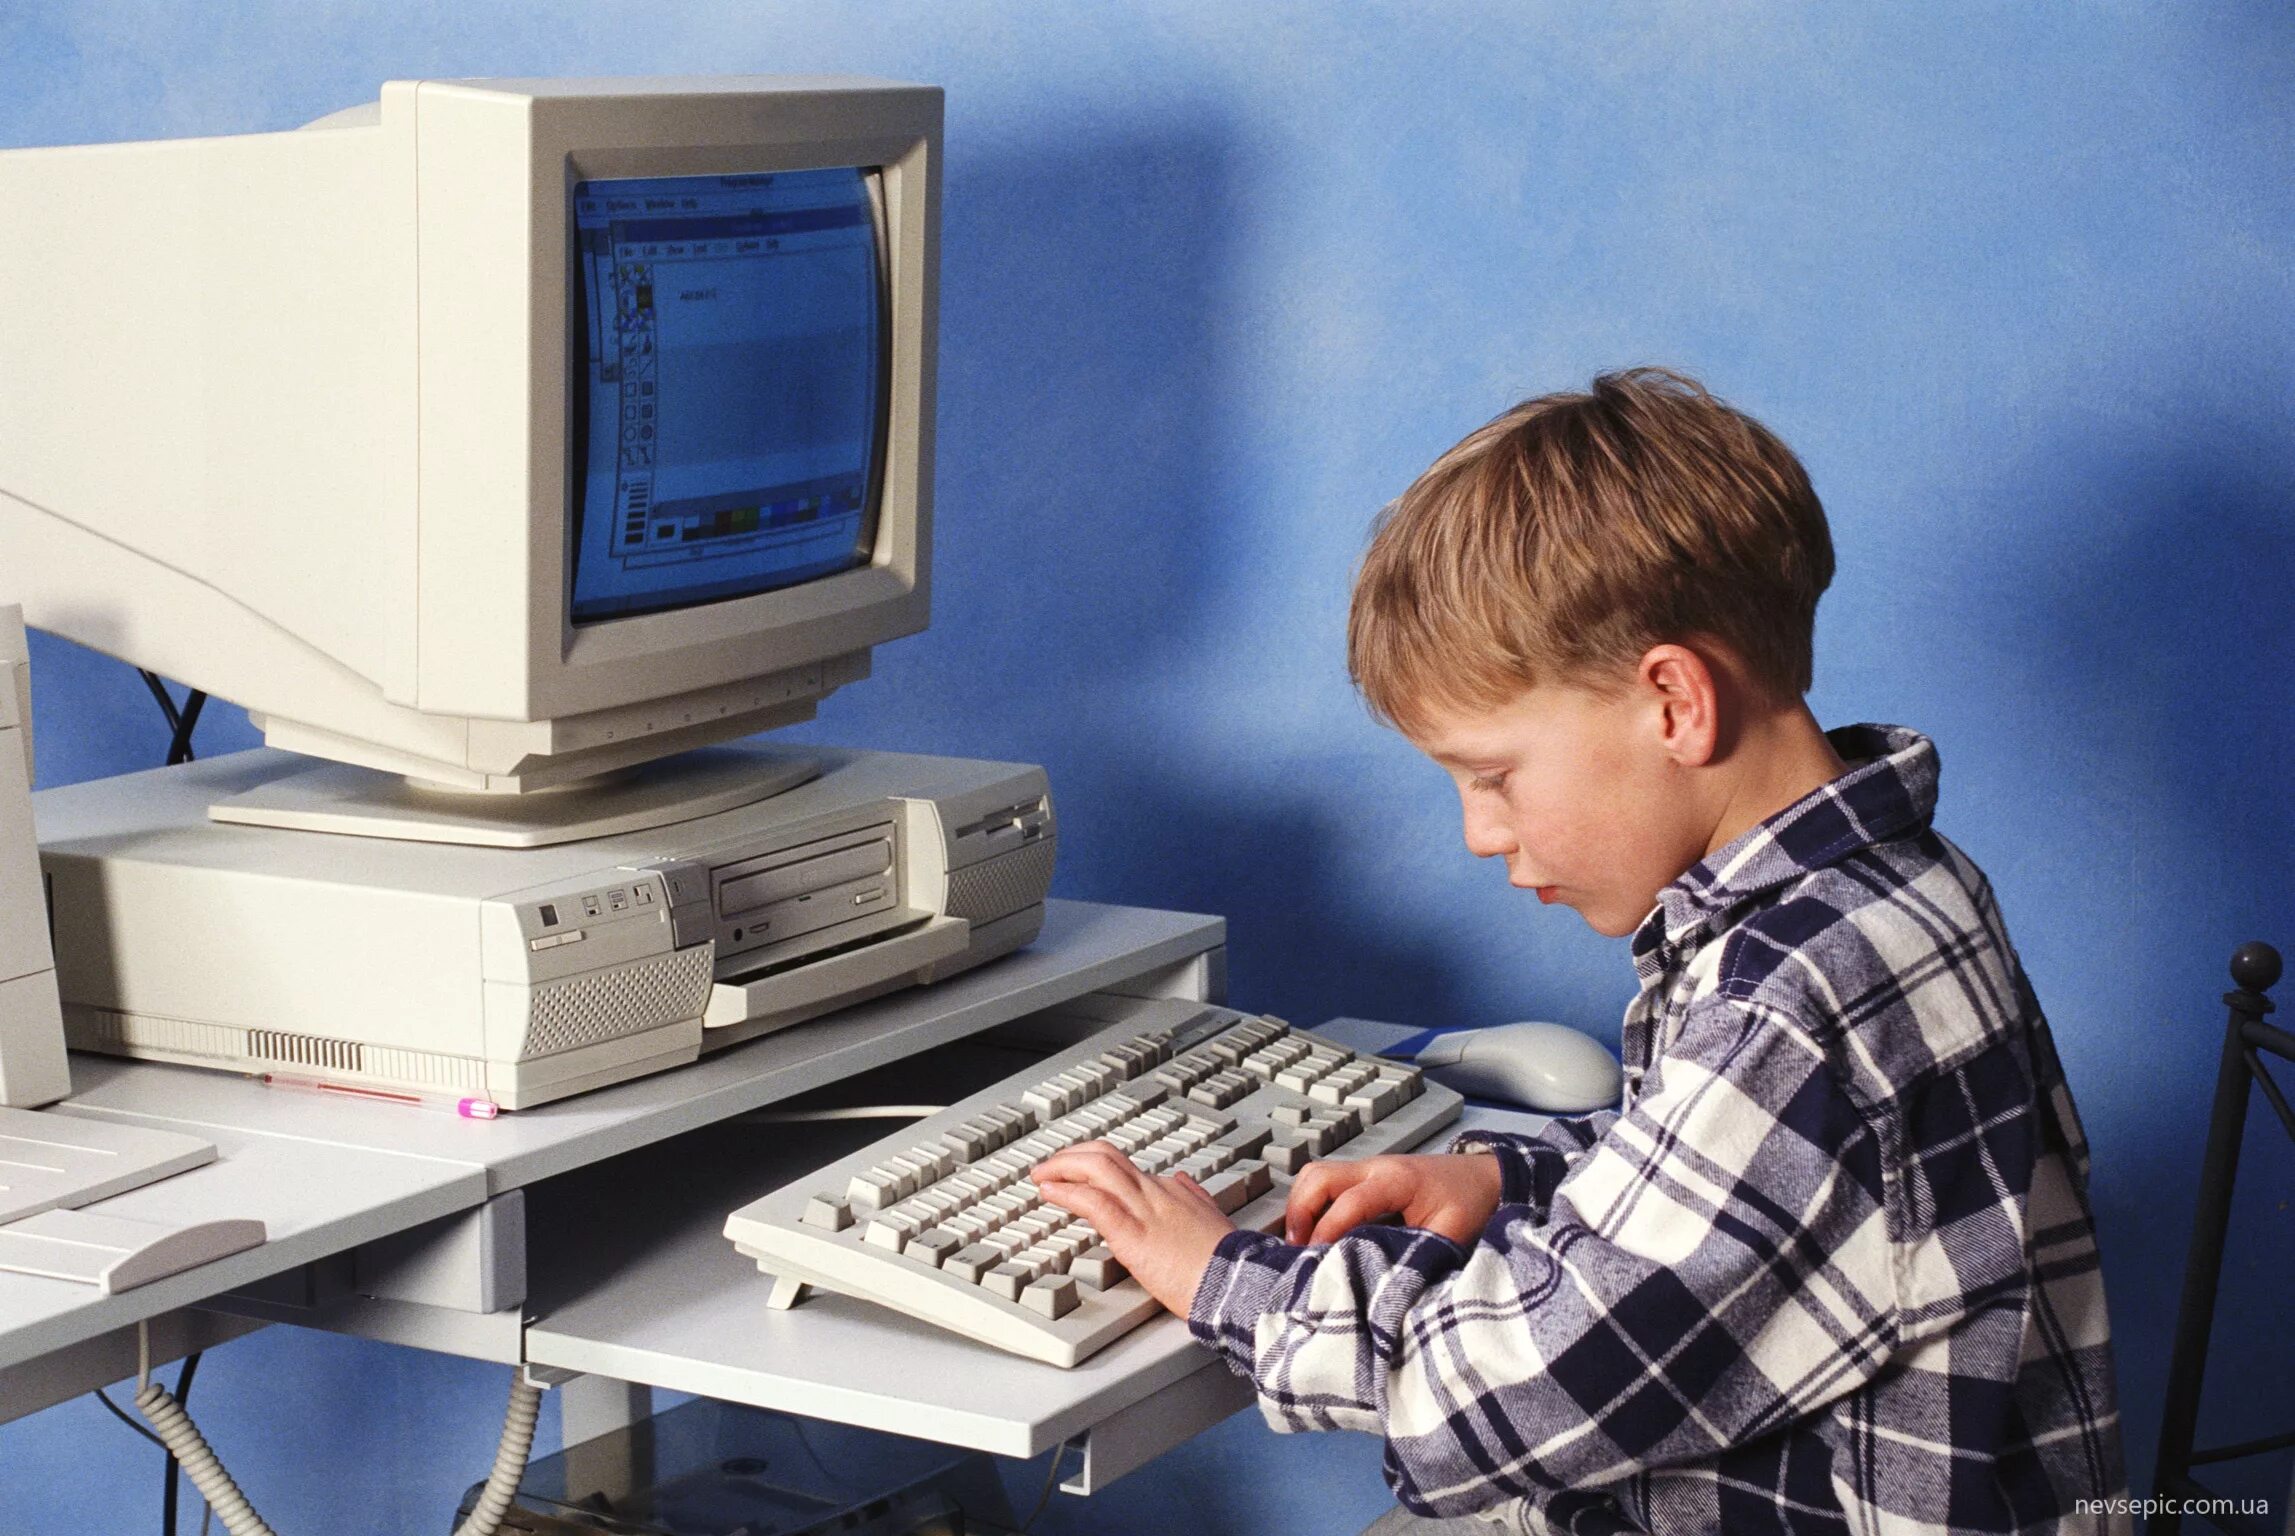 Тоже компьютер. Старый комп и человек. Человек за старым компьютером. Компьютерный мальчик. Старый компьютер дети.